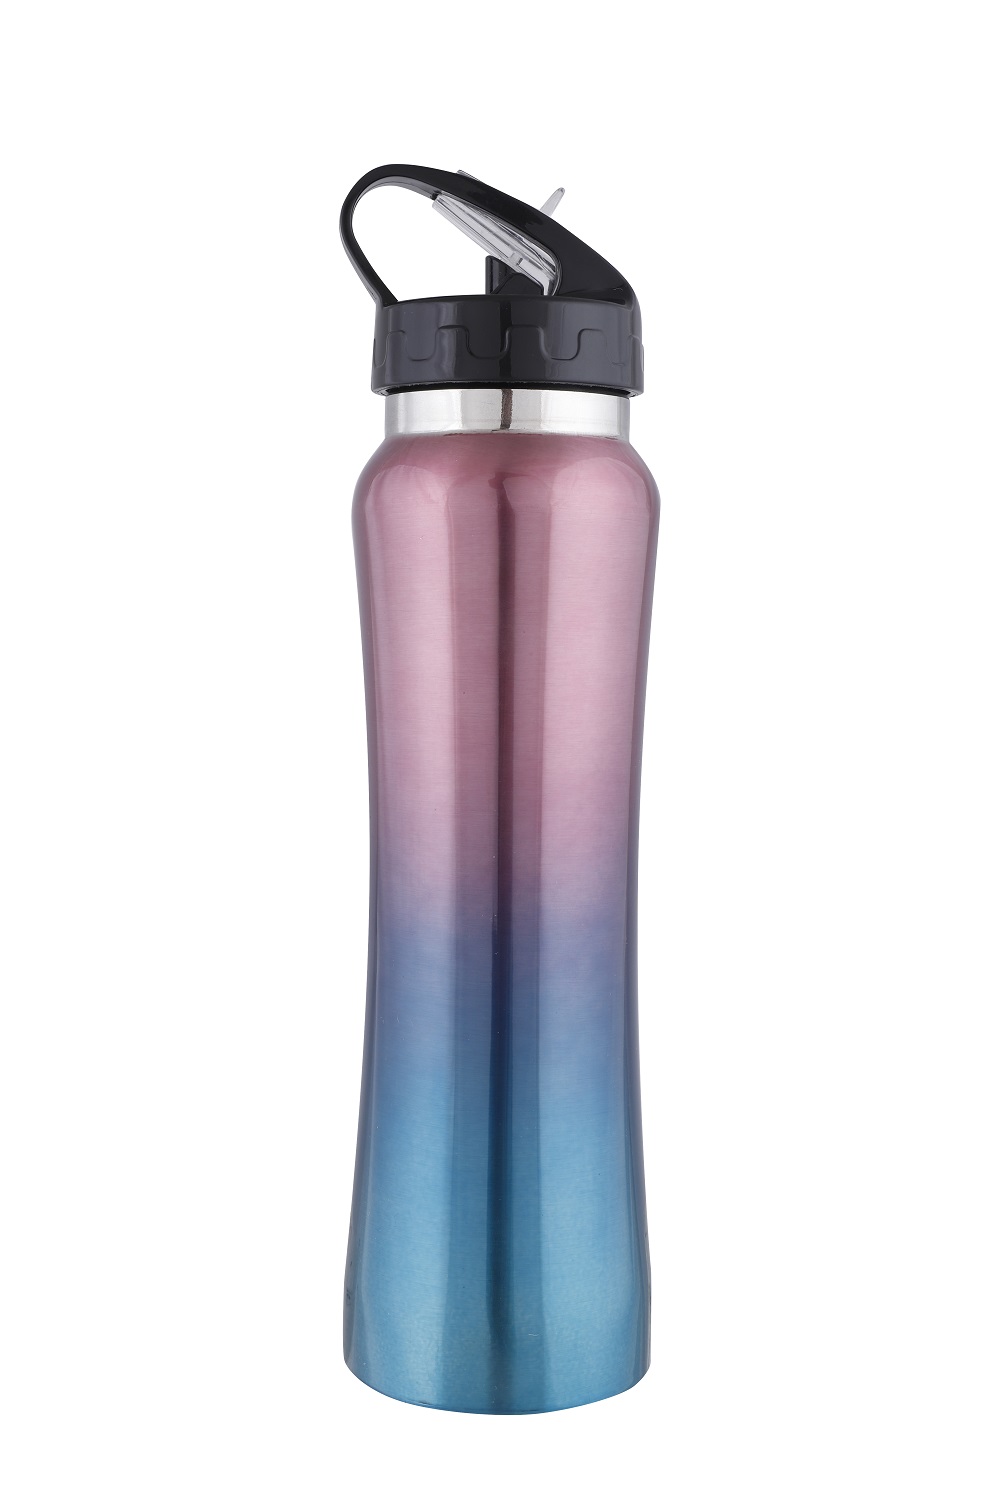 colorful steel water bottle